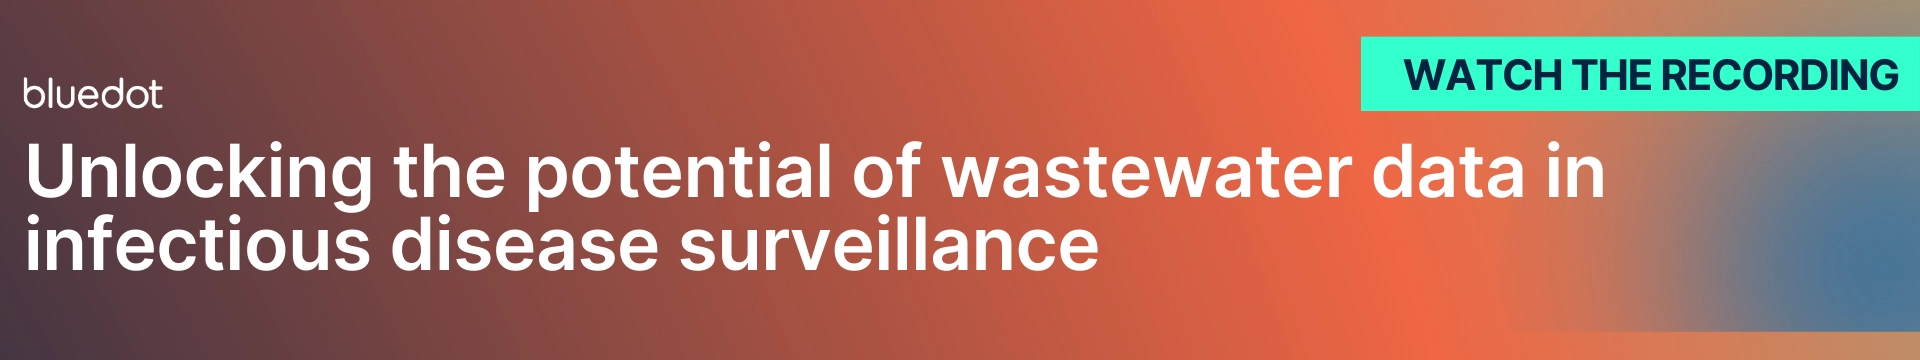 Wastewater surveillance webinar banner 1920x360